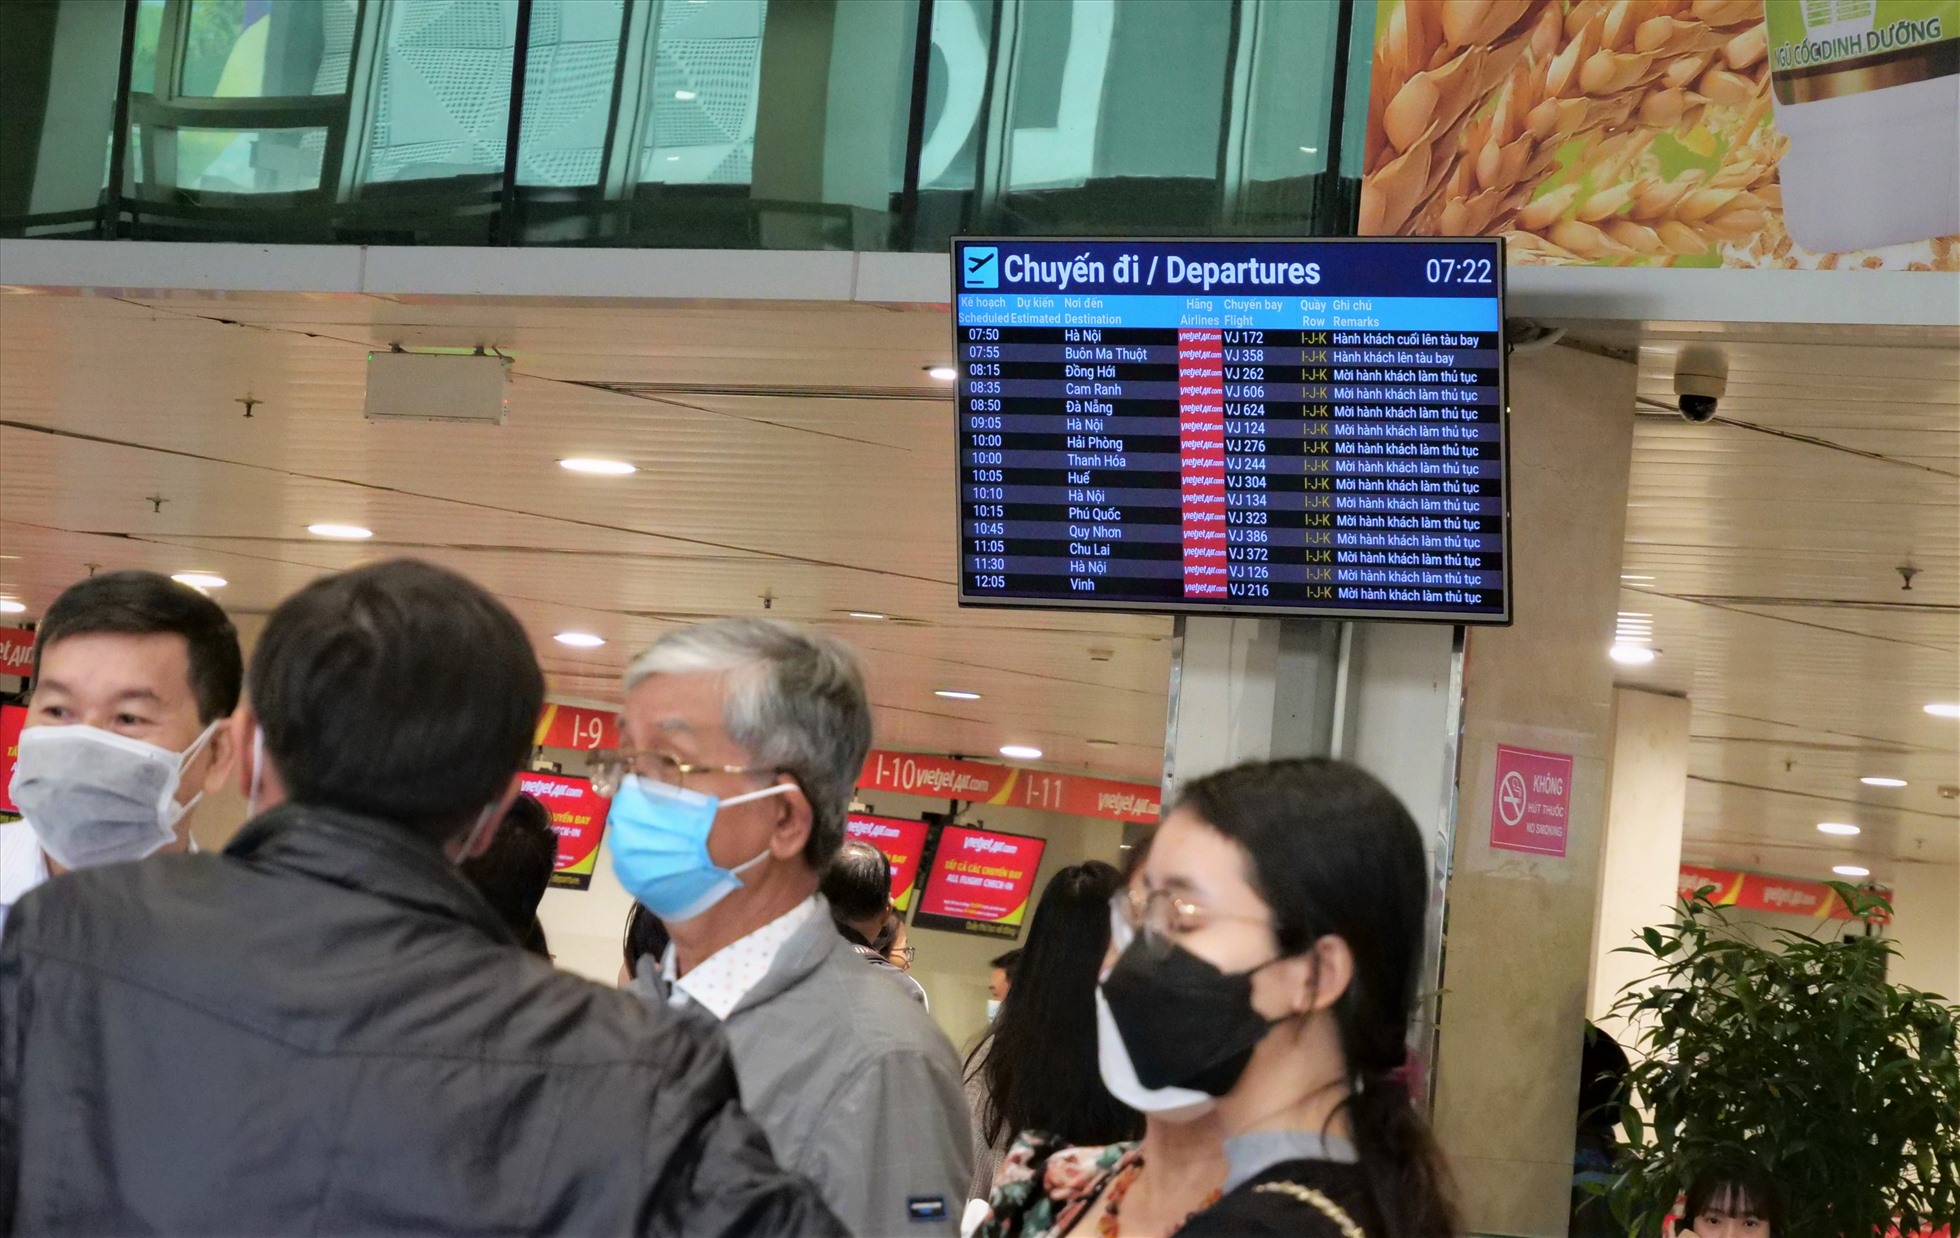 Dịp Tết Dương lịch 2023, sân bay Tân Sơn Nhất đón lượng hành khách tăng cao nhất, dự kiến phục vụ hơn 112.000 lượt khách, trong đó có hơn 57.000 khách đi và hơn 55.000 khách đến.